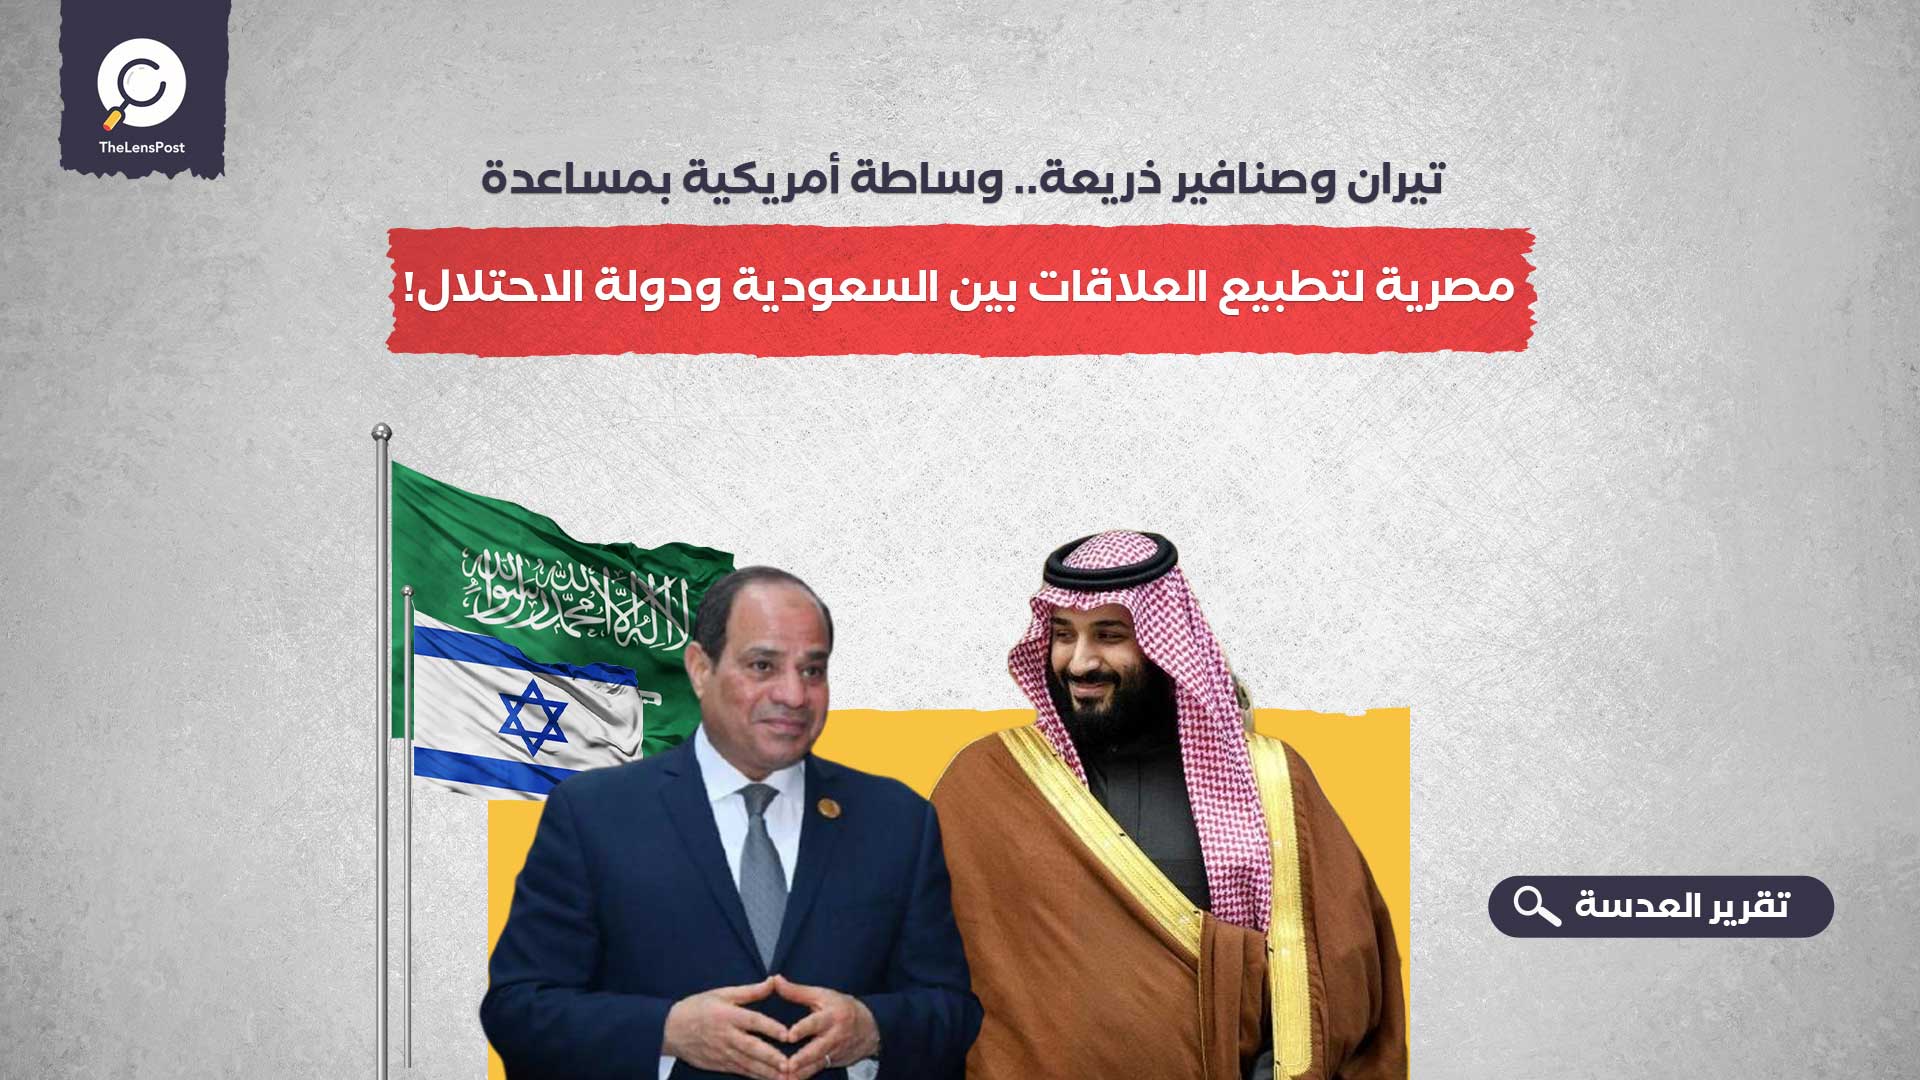 تيران وصنافير ذريعة.. وساطة أمريكية بمساعدة مصرية لتطبيع العلاقات بين السعودية ودولة الاحتلال!